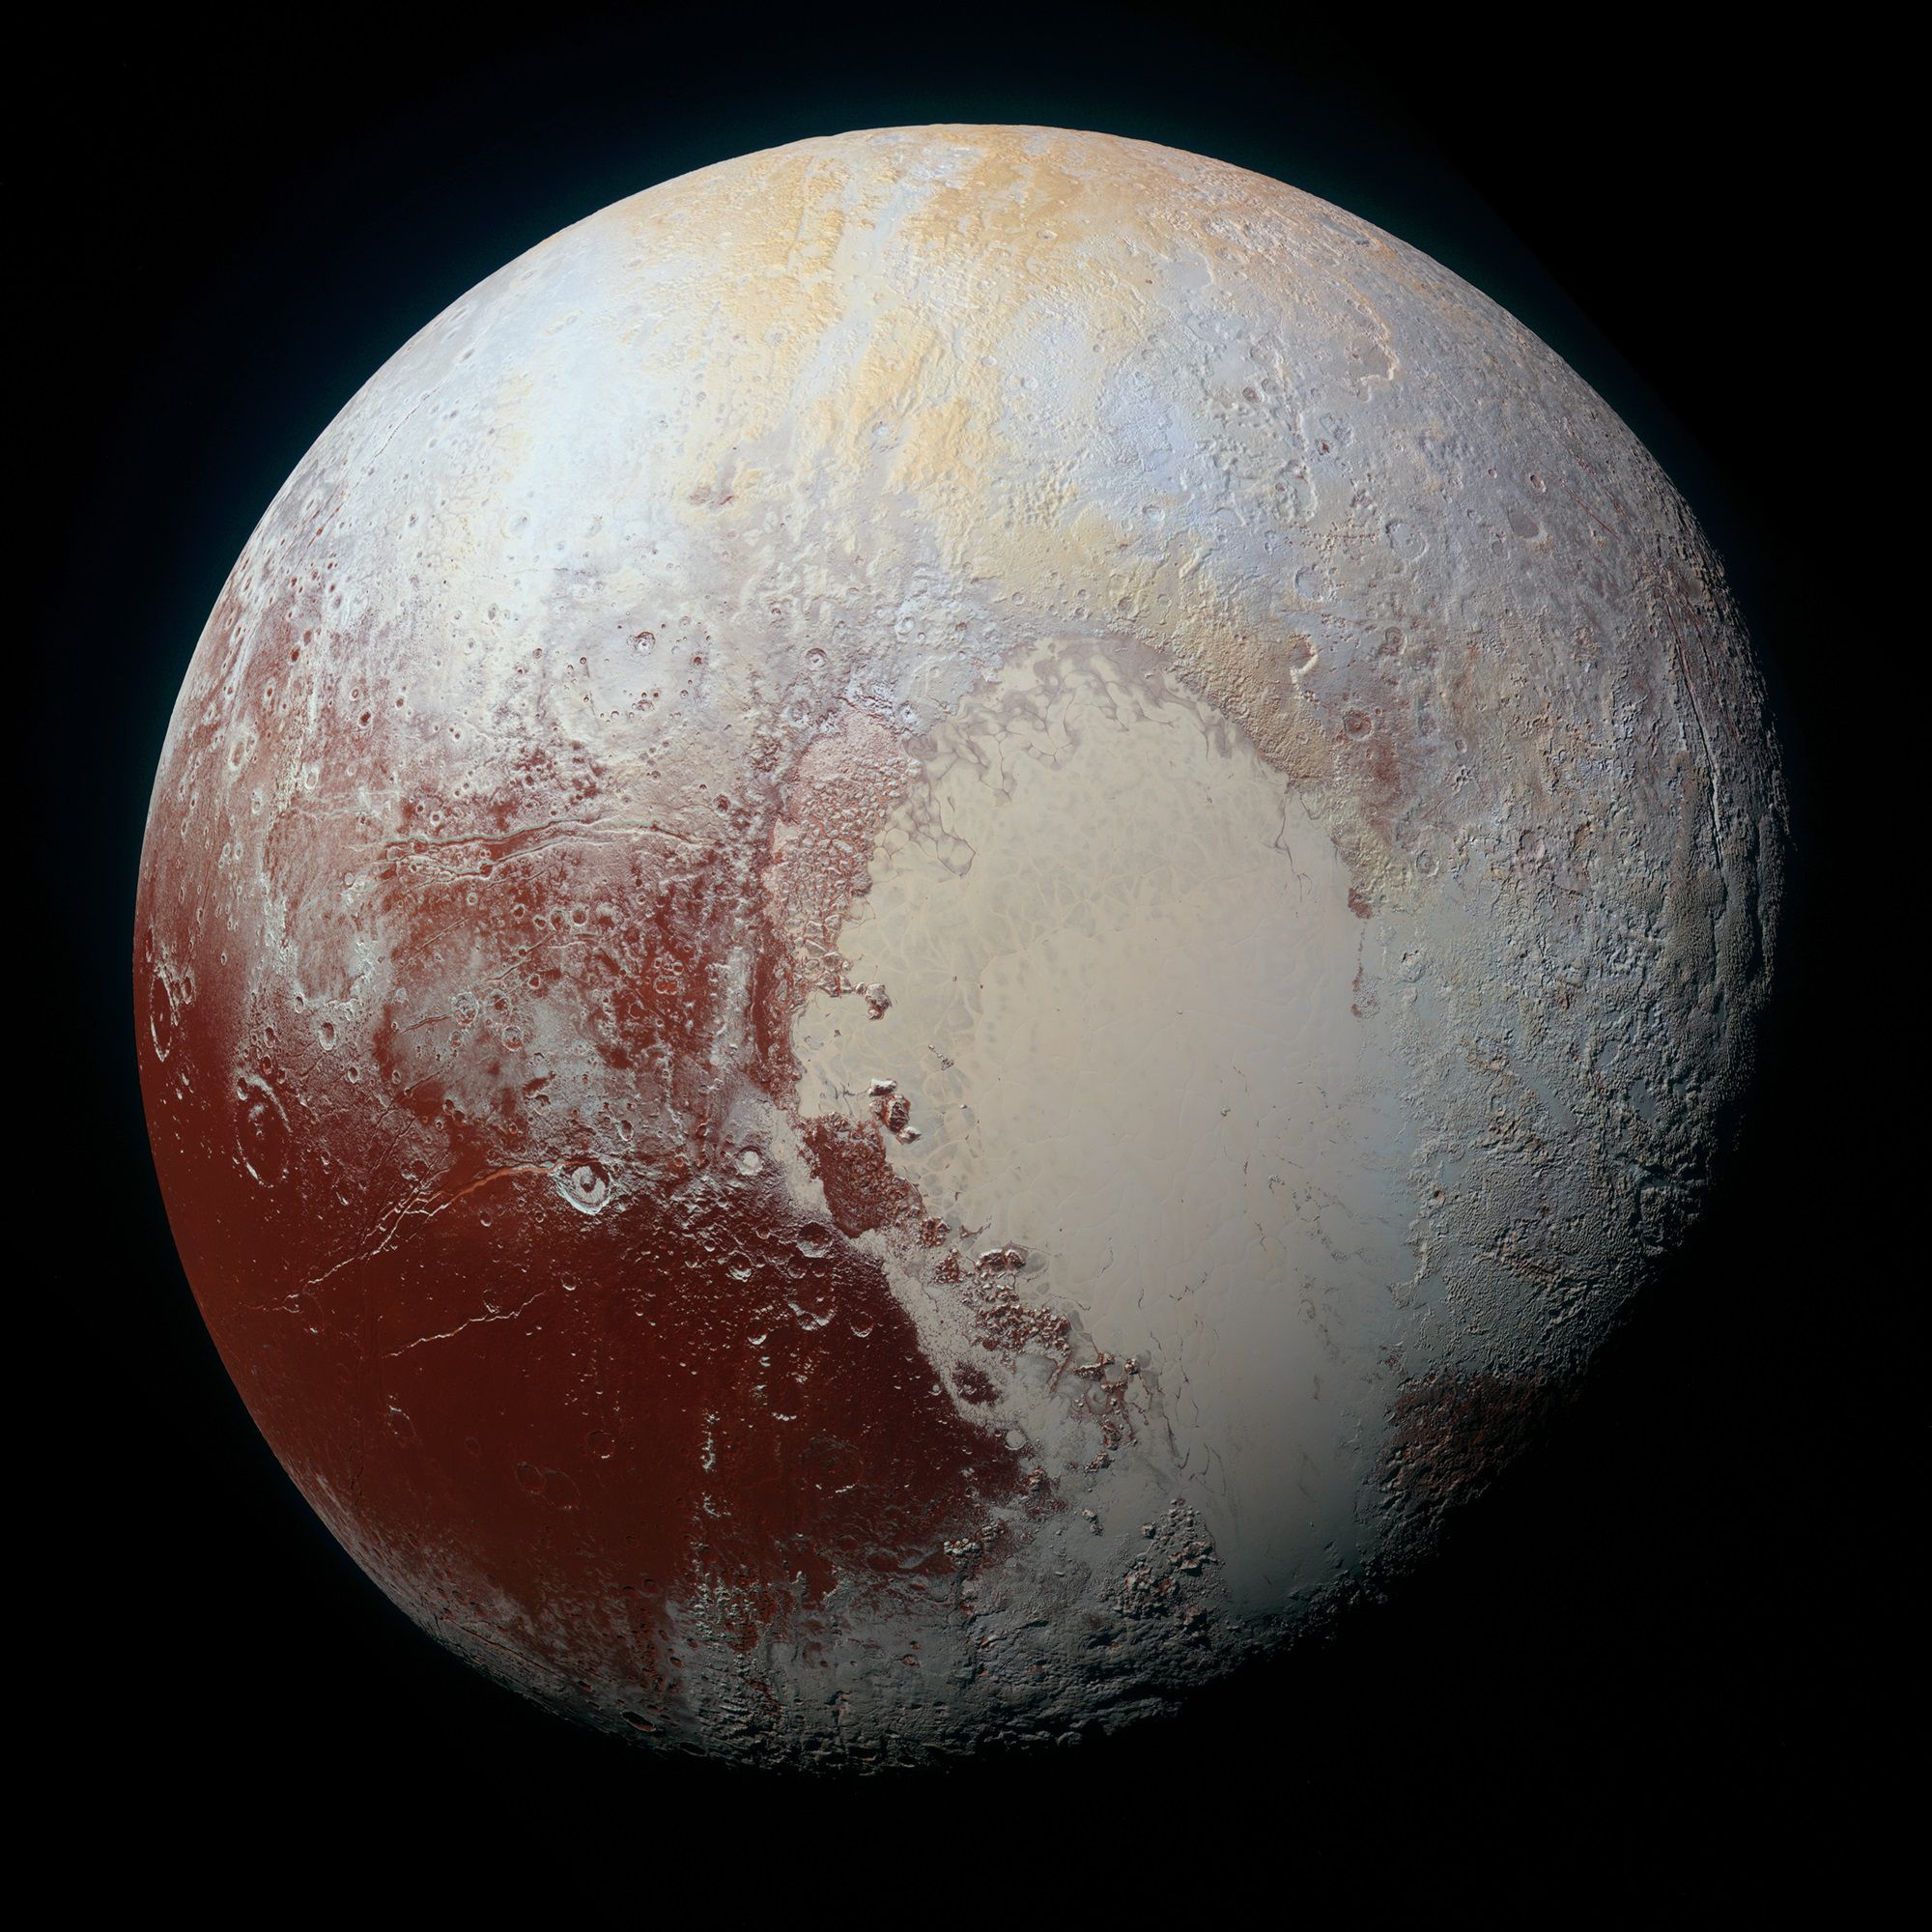 НАСА опублікувало знімки обертання Плутона і Харона. На знімках показано, як змінюється вигляд космічних тіл за один "плутоніанський" день.